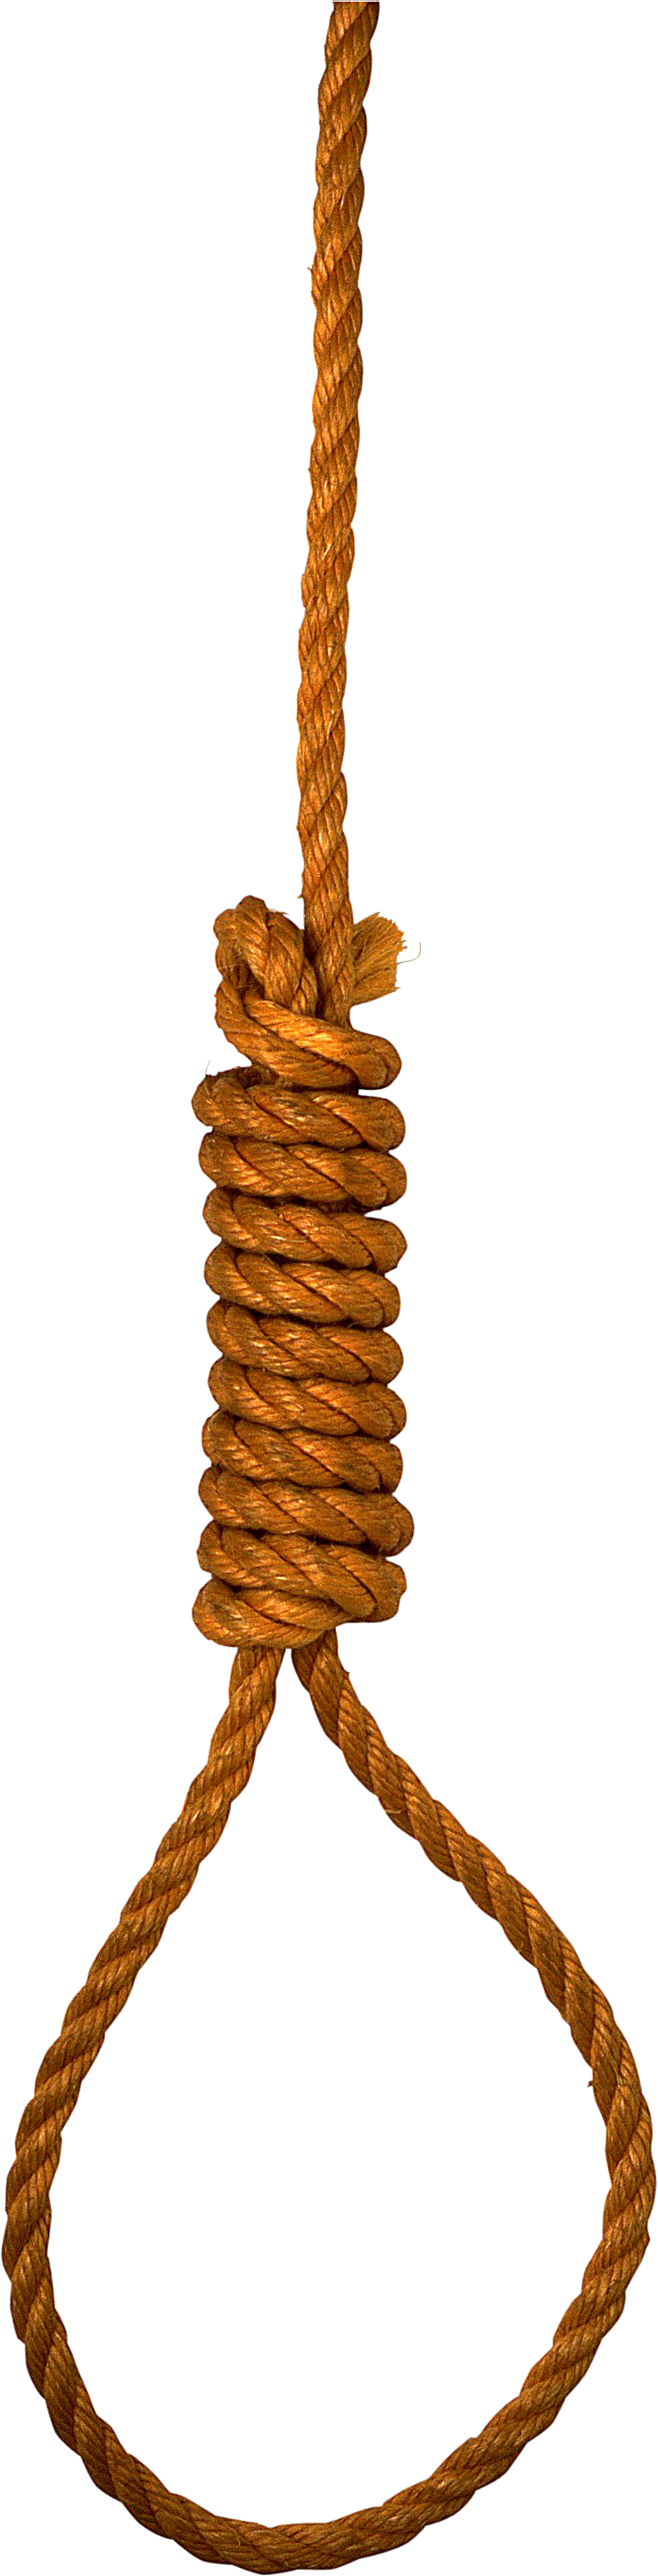 rope loop PNG